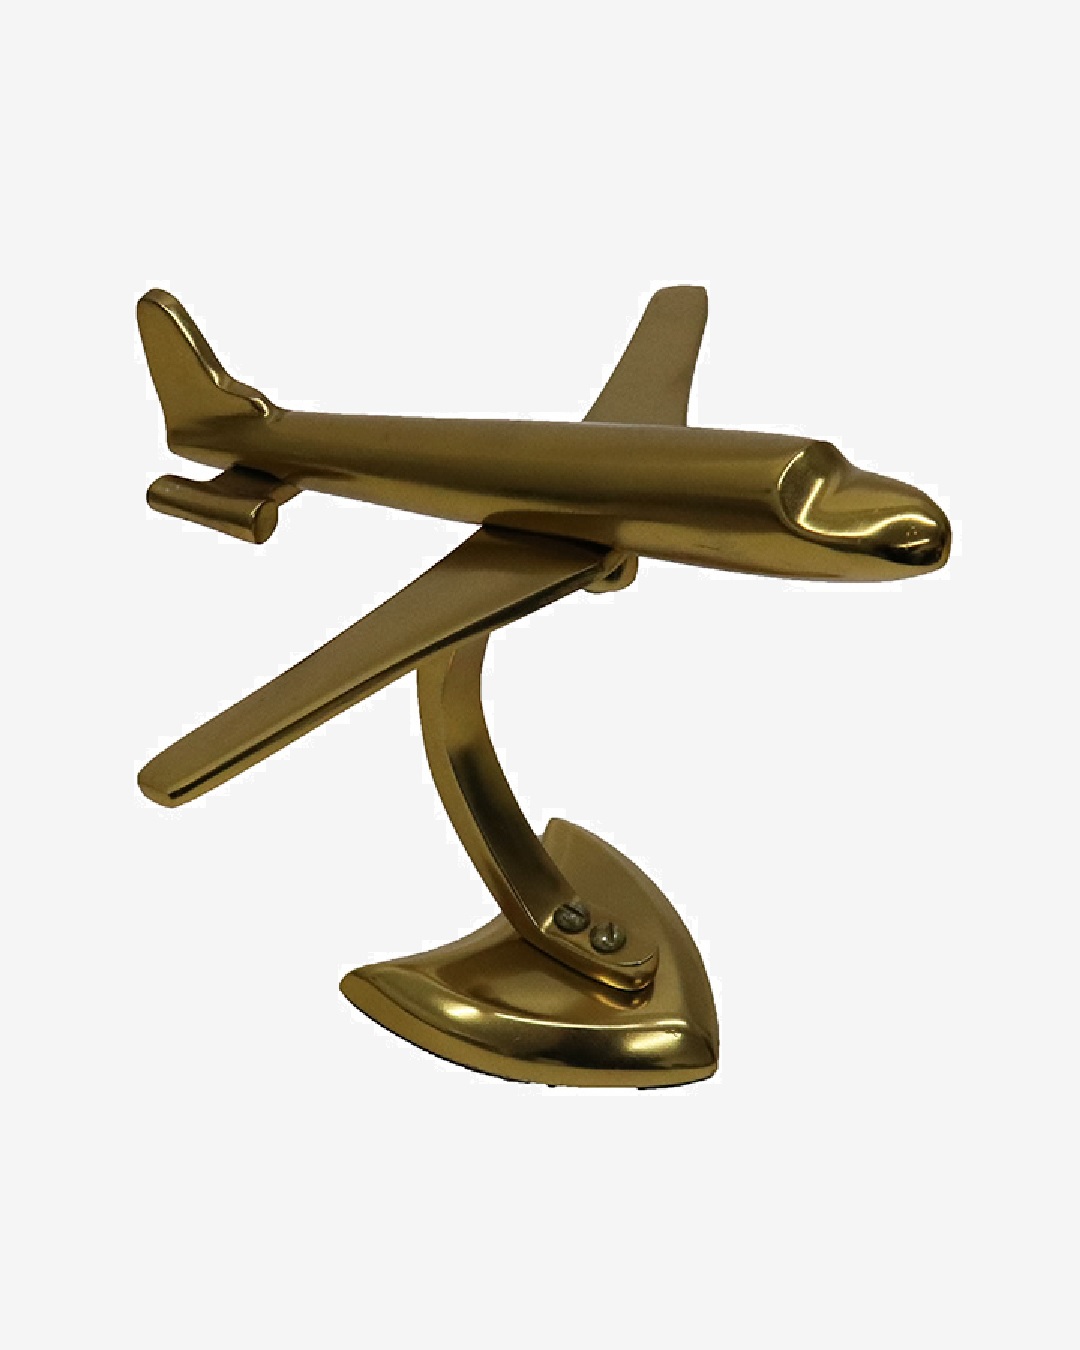 Gold aluminium aeroplane statue